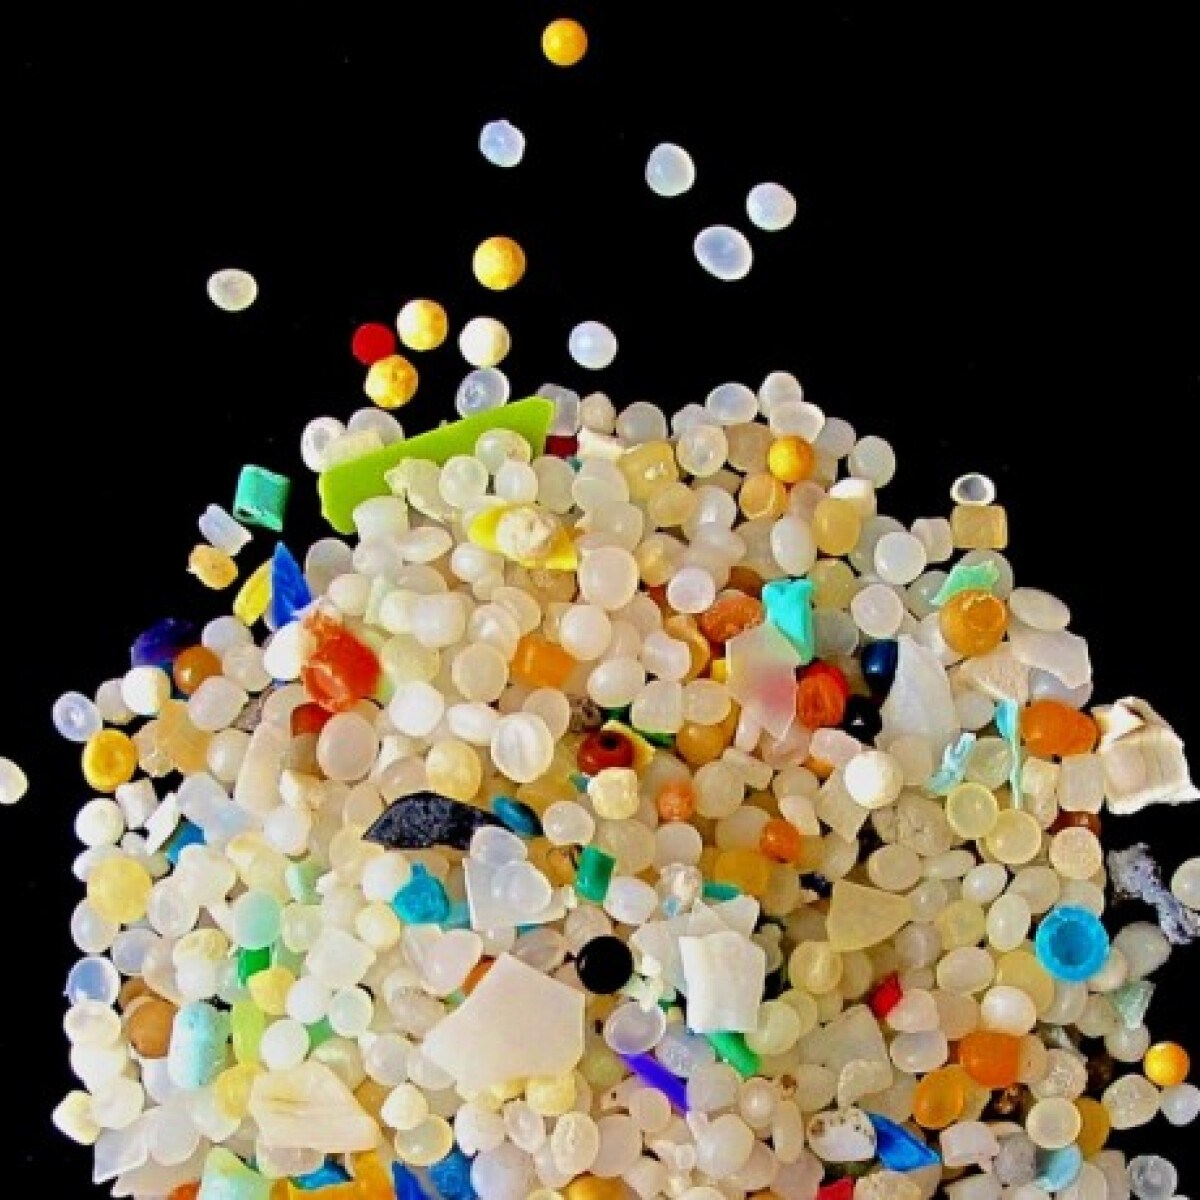 Műanyagcsomagolás az ételBEN - A mikroműanyagok már a spájzban vannak